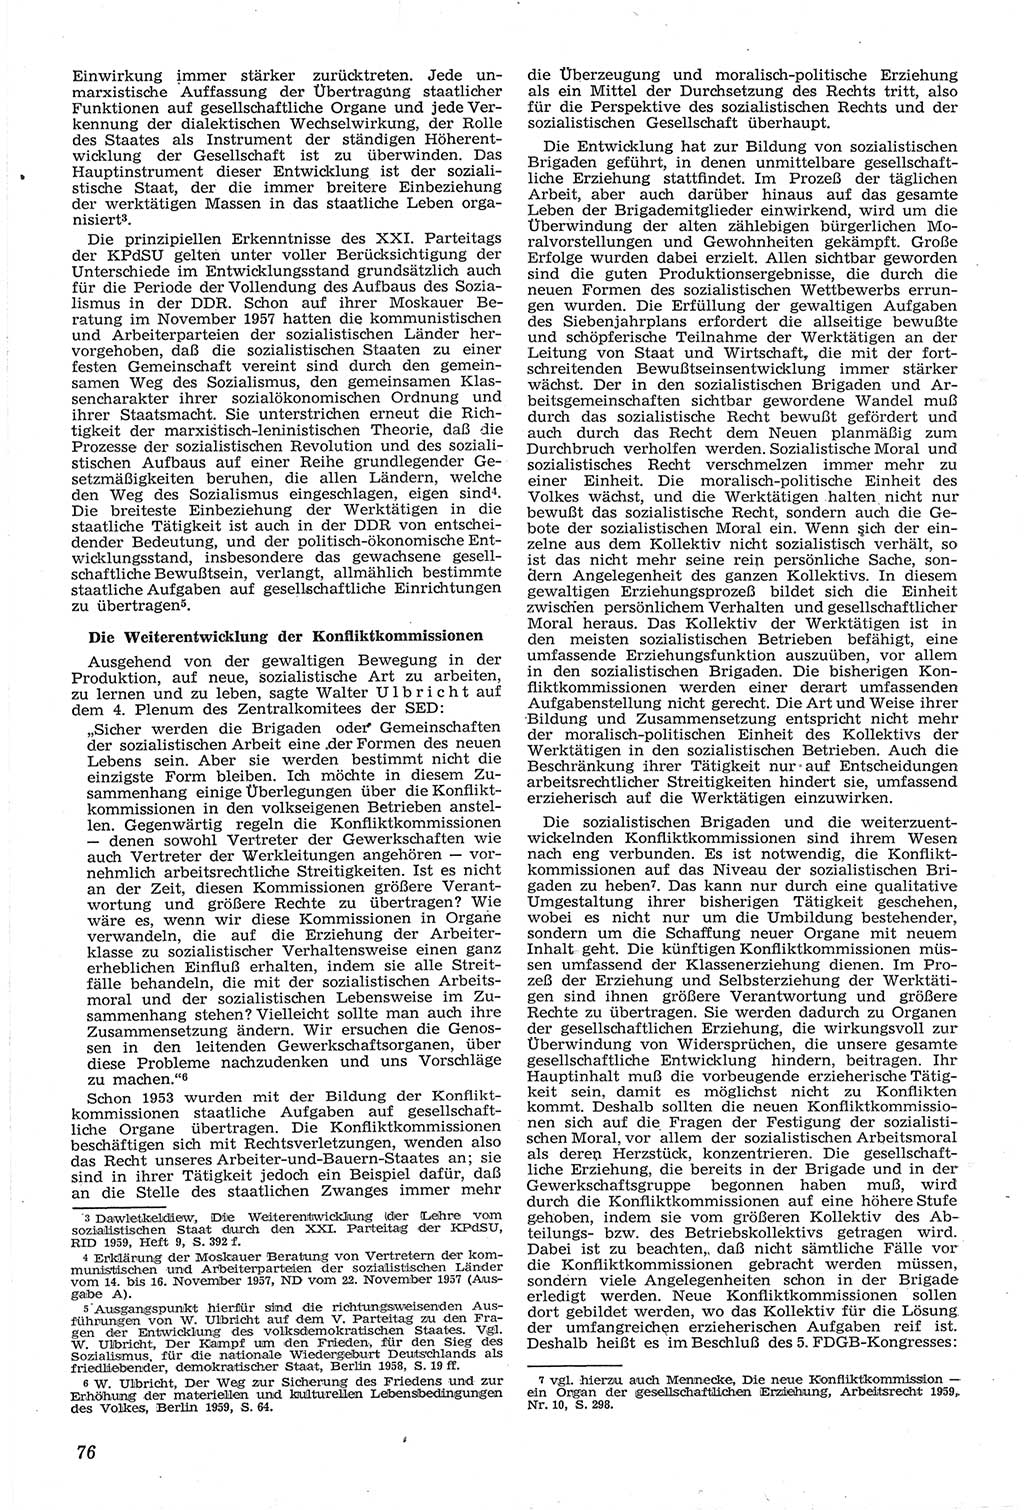 Neue Justiz (NJ), Zeitschrift für Recht und Rechtswissenschaft [Deutsche Demokratische Republik (DDR)], 14. Jahrgang 1960, Seite 76 (NJ DDR 1960, S. 76)